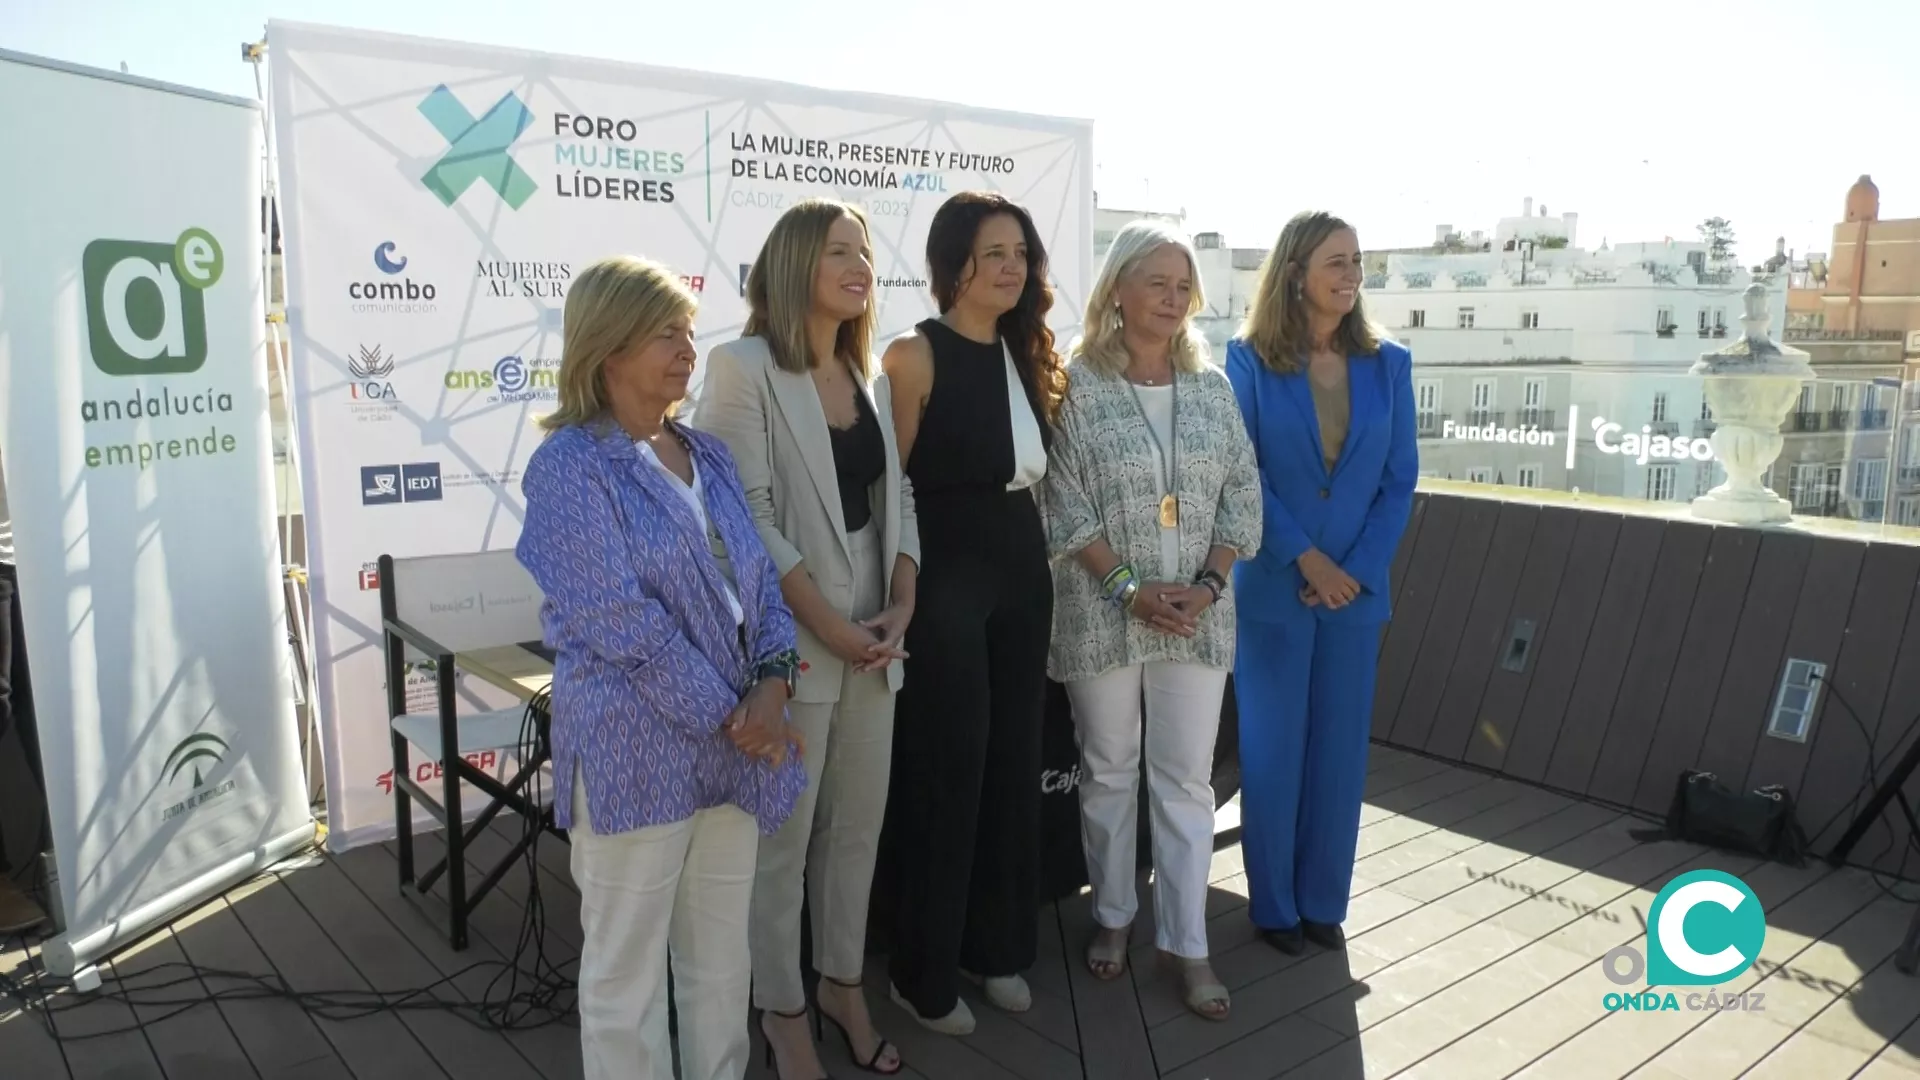 Foto de familia en la presentación del I Foro de Mujeres Líderes en la Economía Azul.